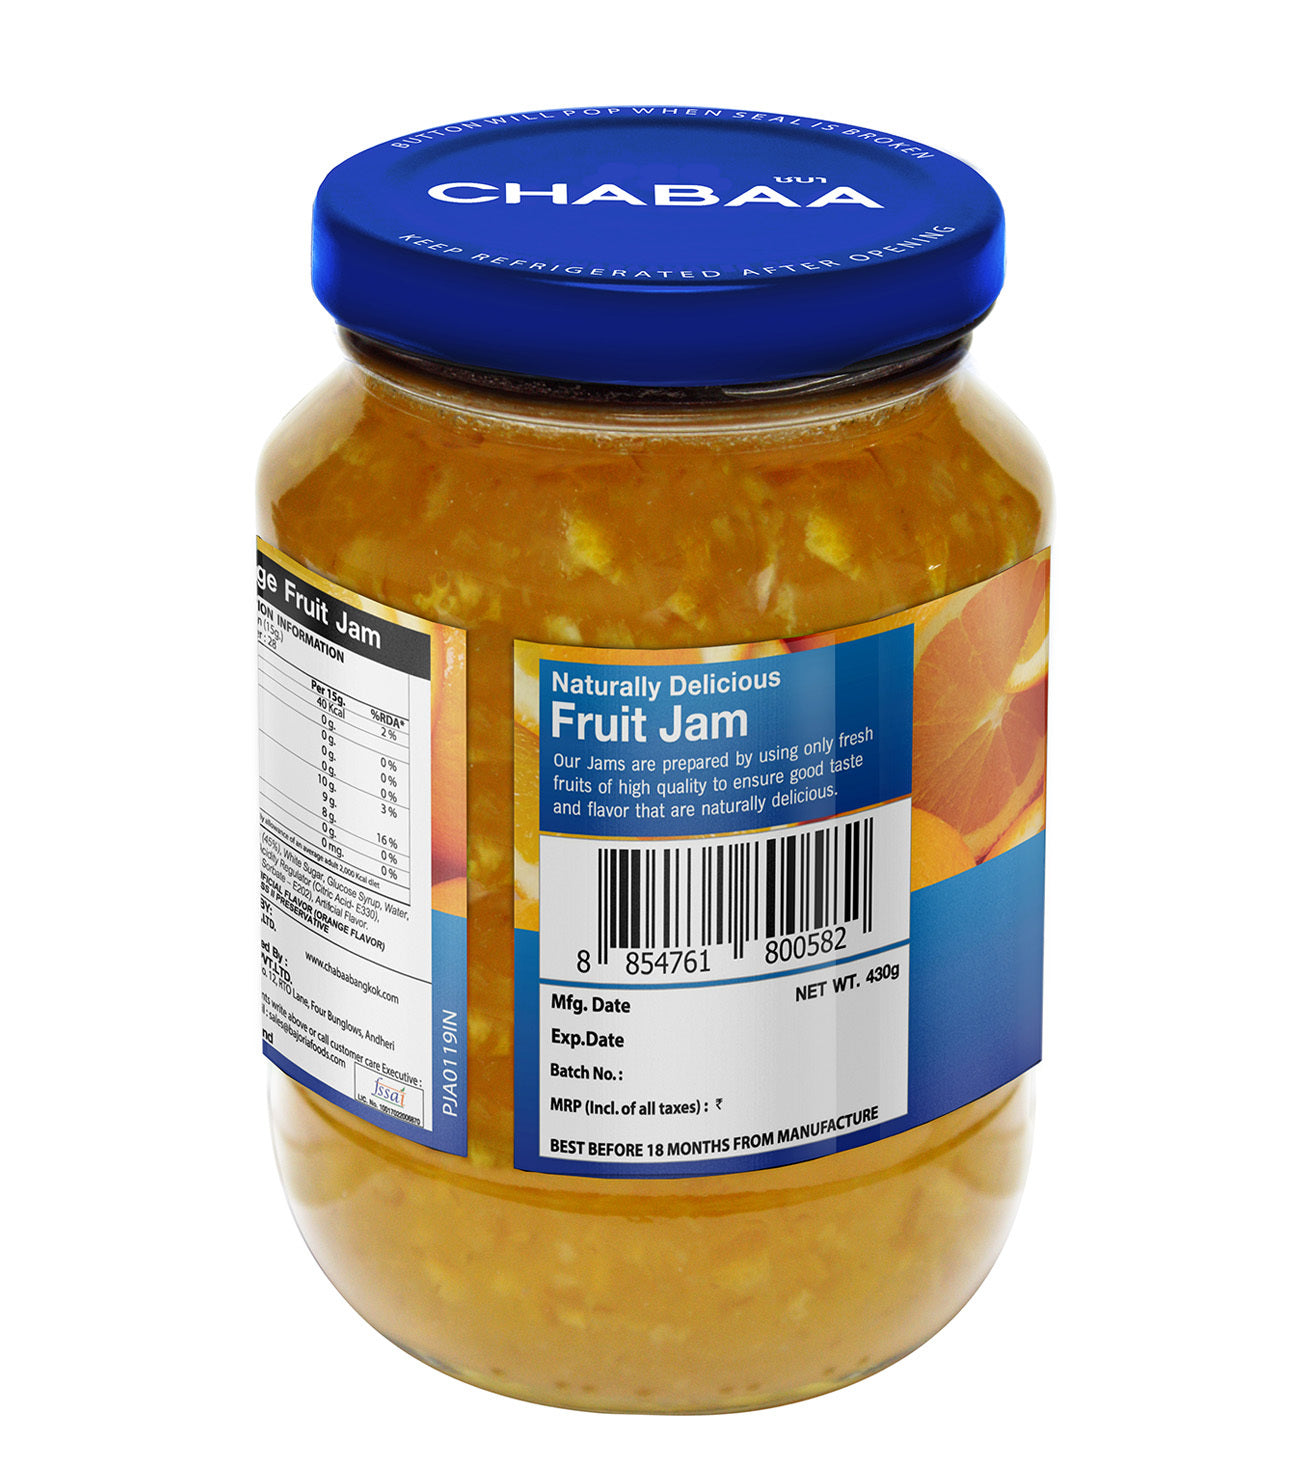 Chabaa Orange Jam, 430g (Imported)